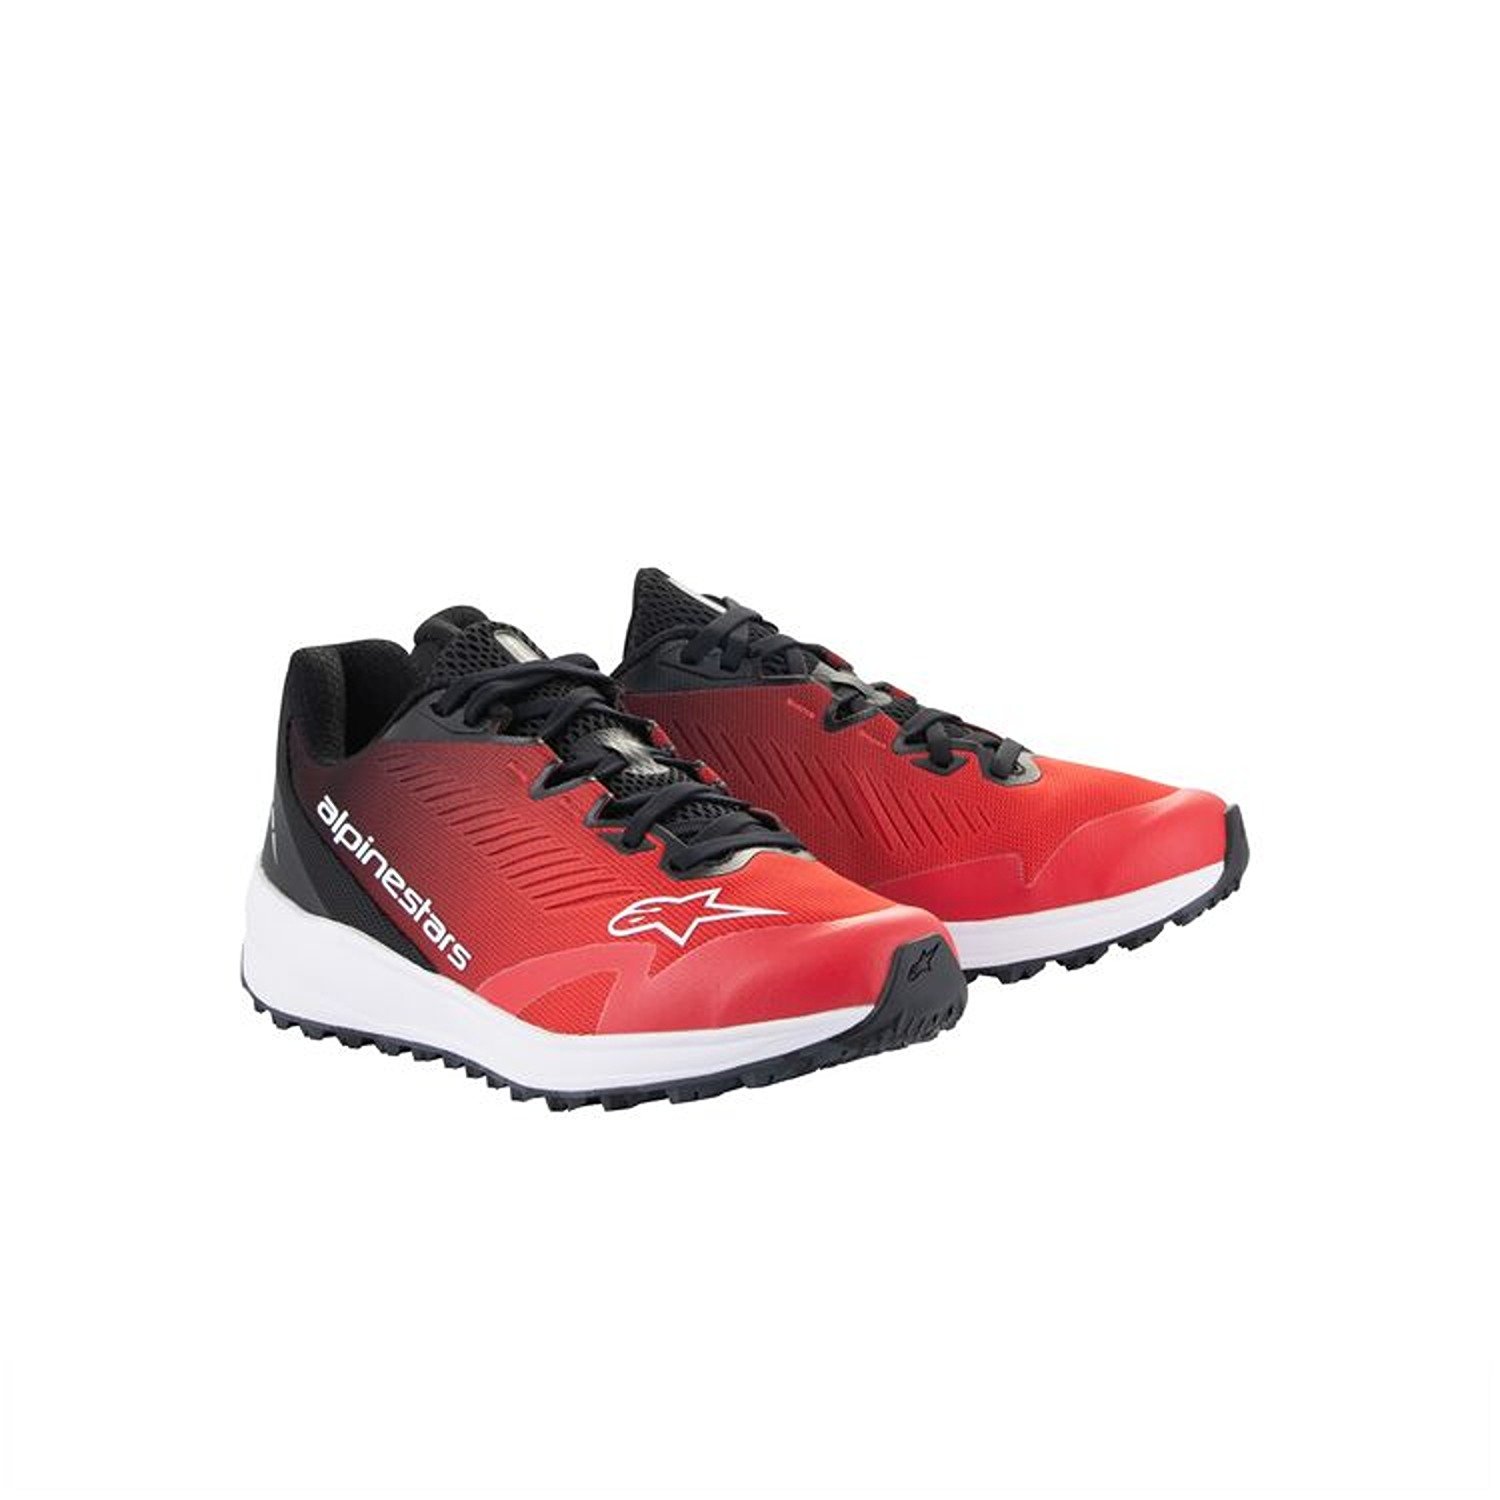 Image of Alpinestars Meta Road V2 Shoes Red Black White Größe US 6